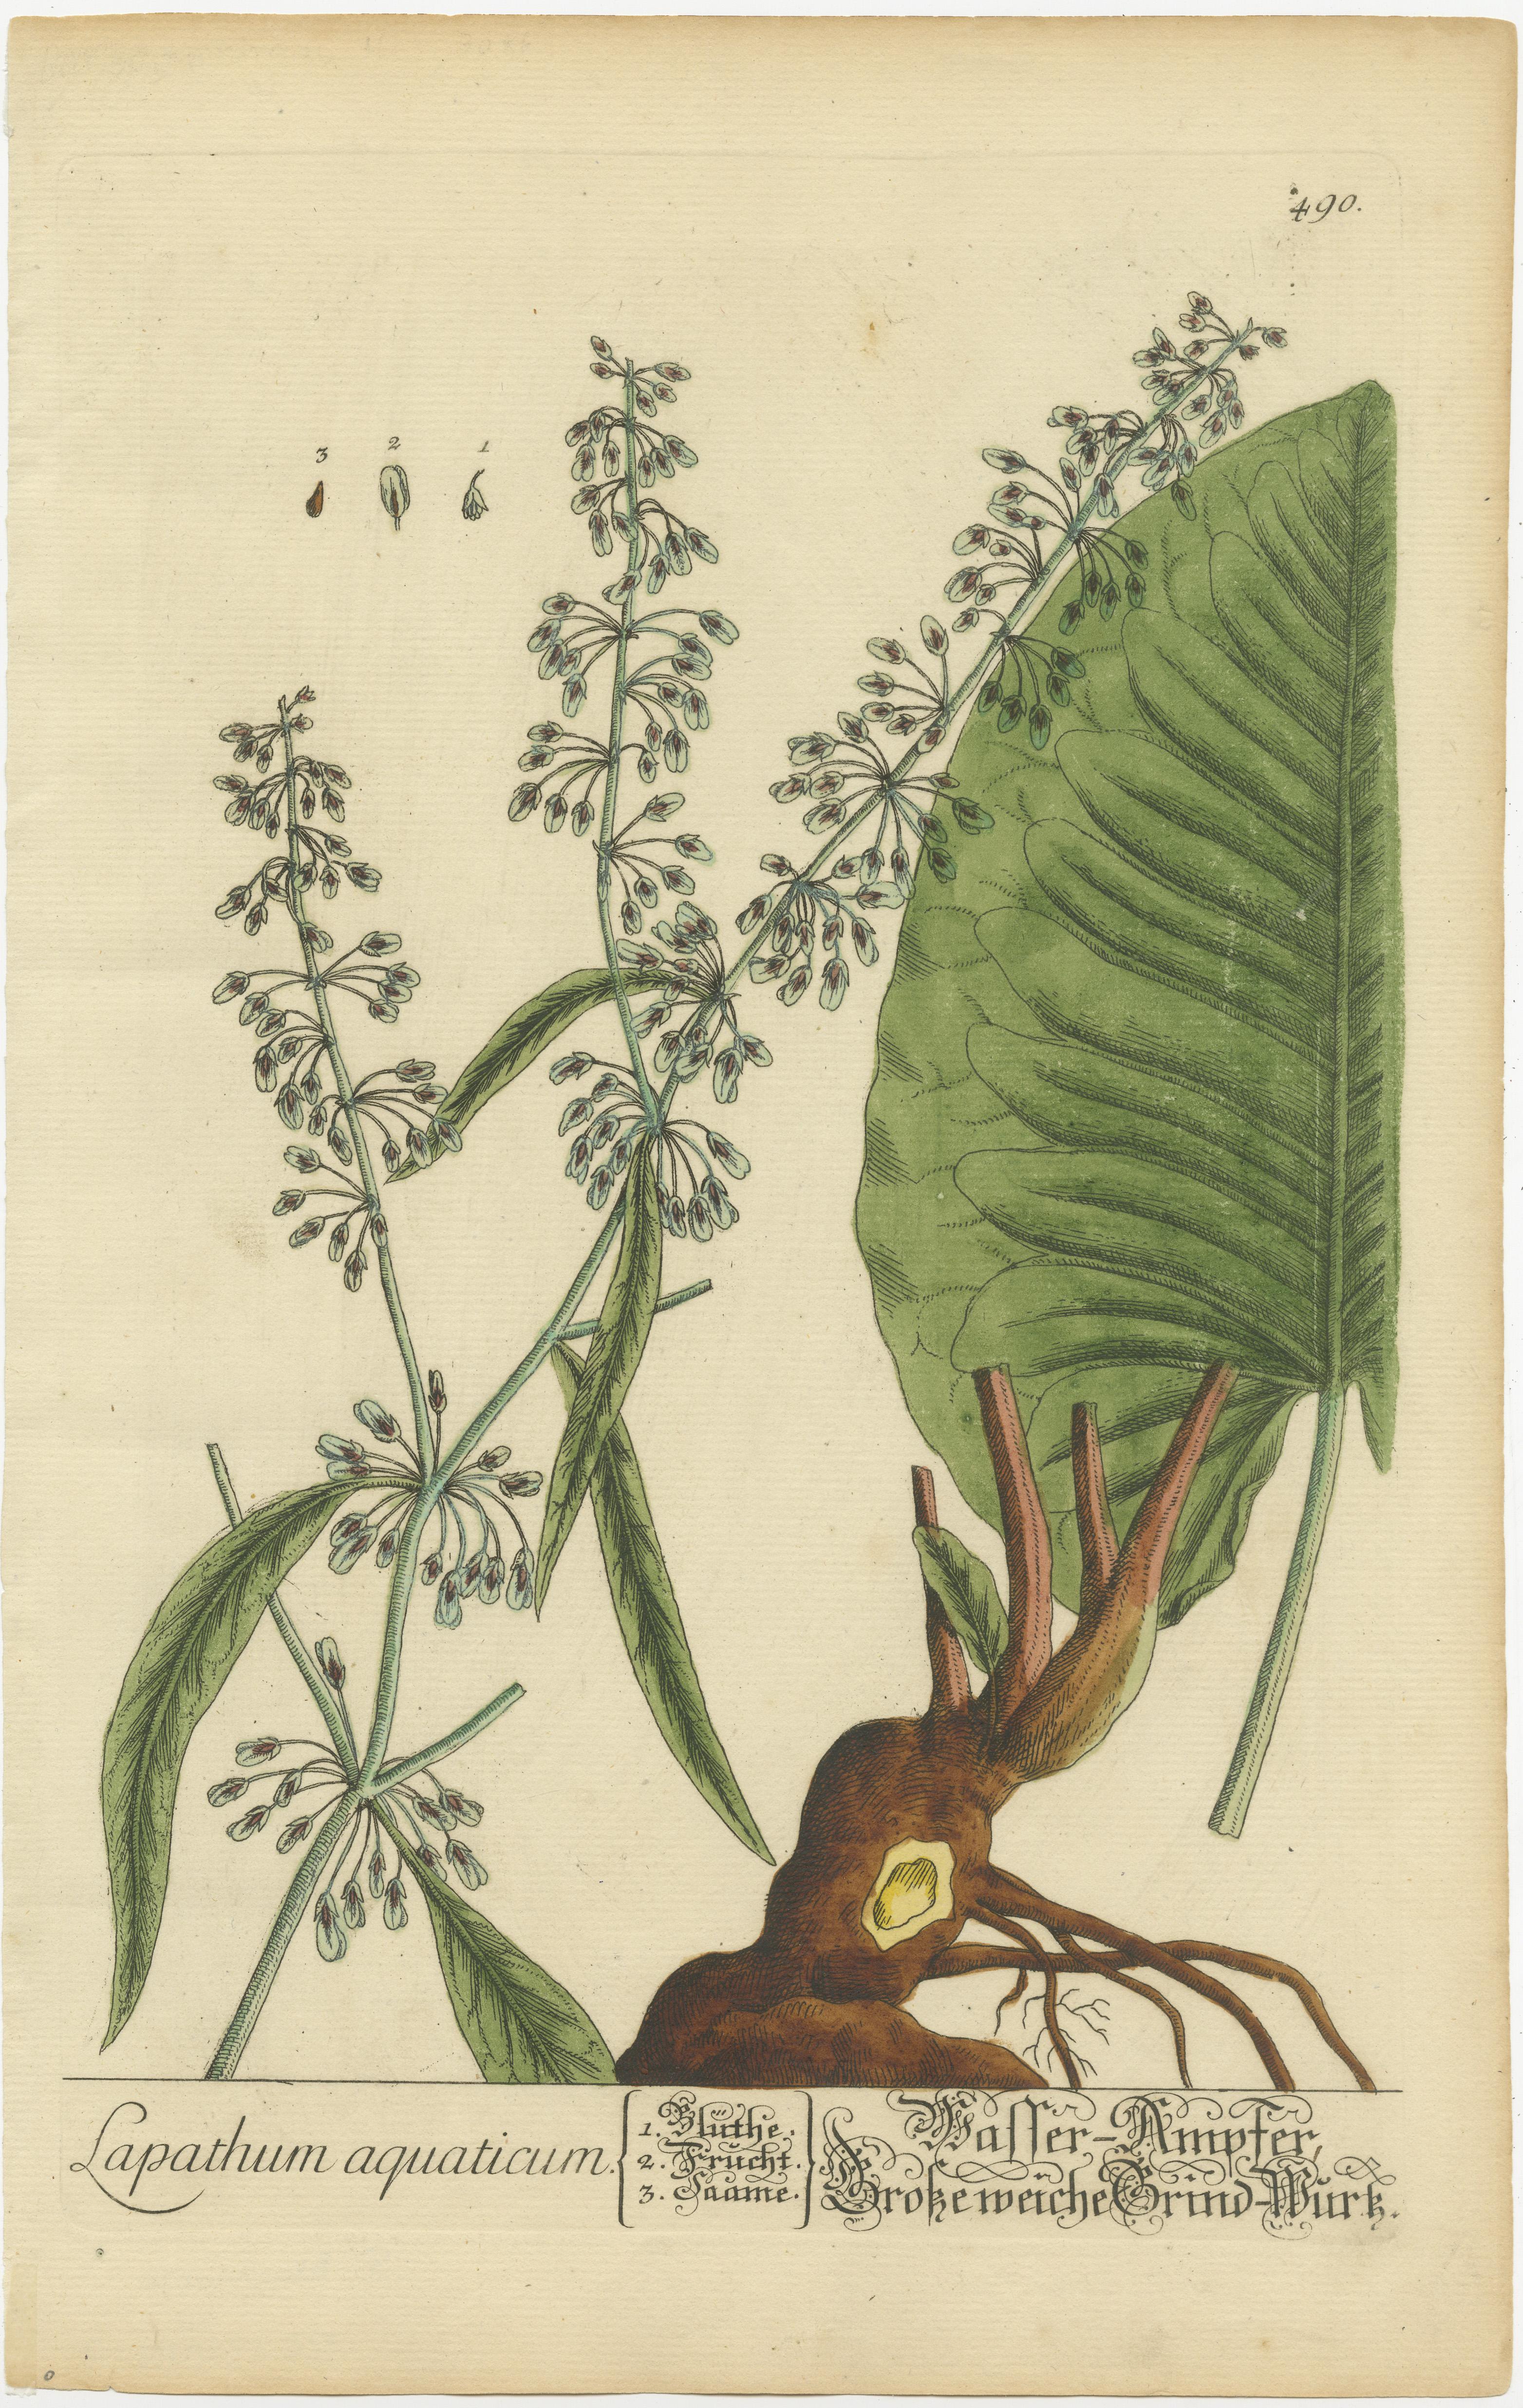 Antiker Druck mit dem Titel 'Lapathum aquaticum'. Botanischer Druck von Rumex aquaticus, einer blühenden Pflanze aus der Familie der Knöterichgewächse. Veröffentlicht von oder nach Elisabeth Blackwell, ca. 1750. 